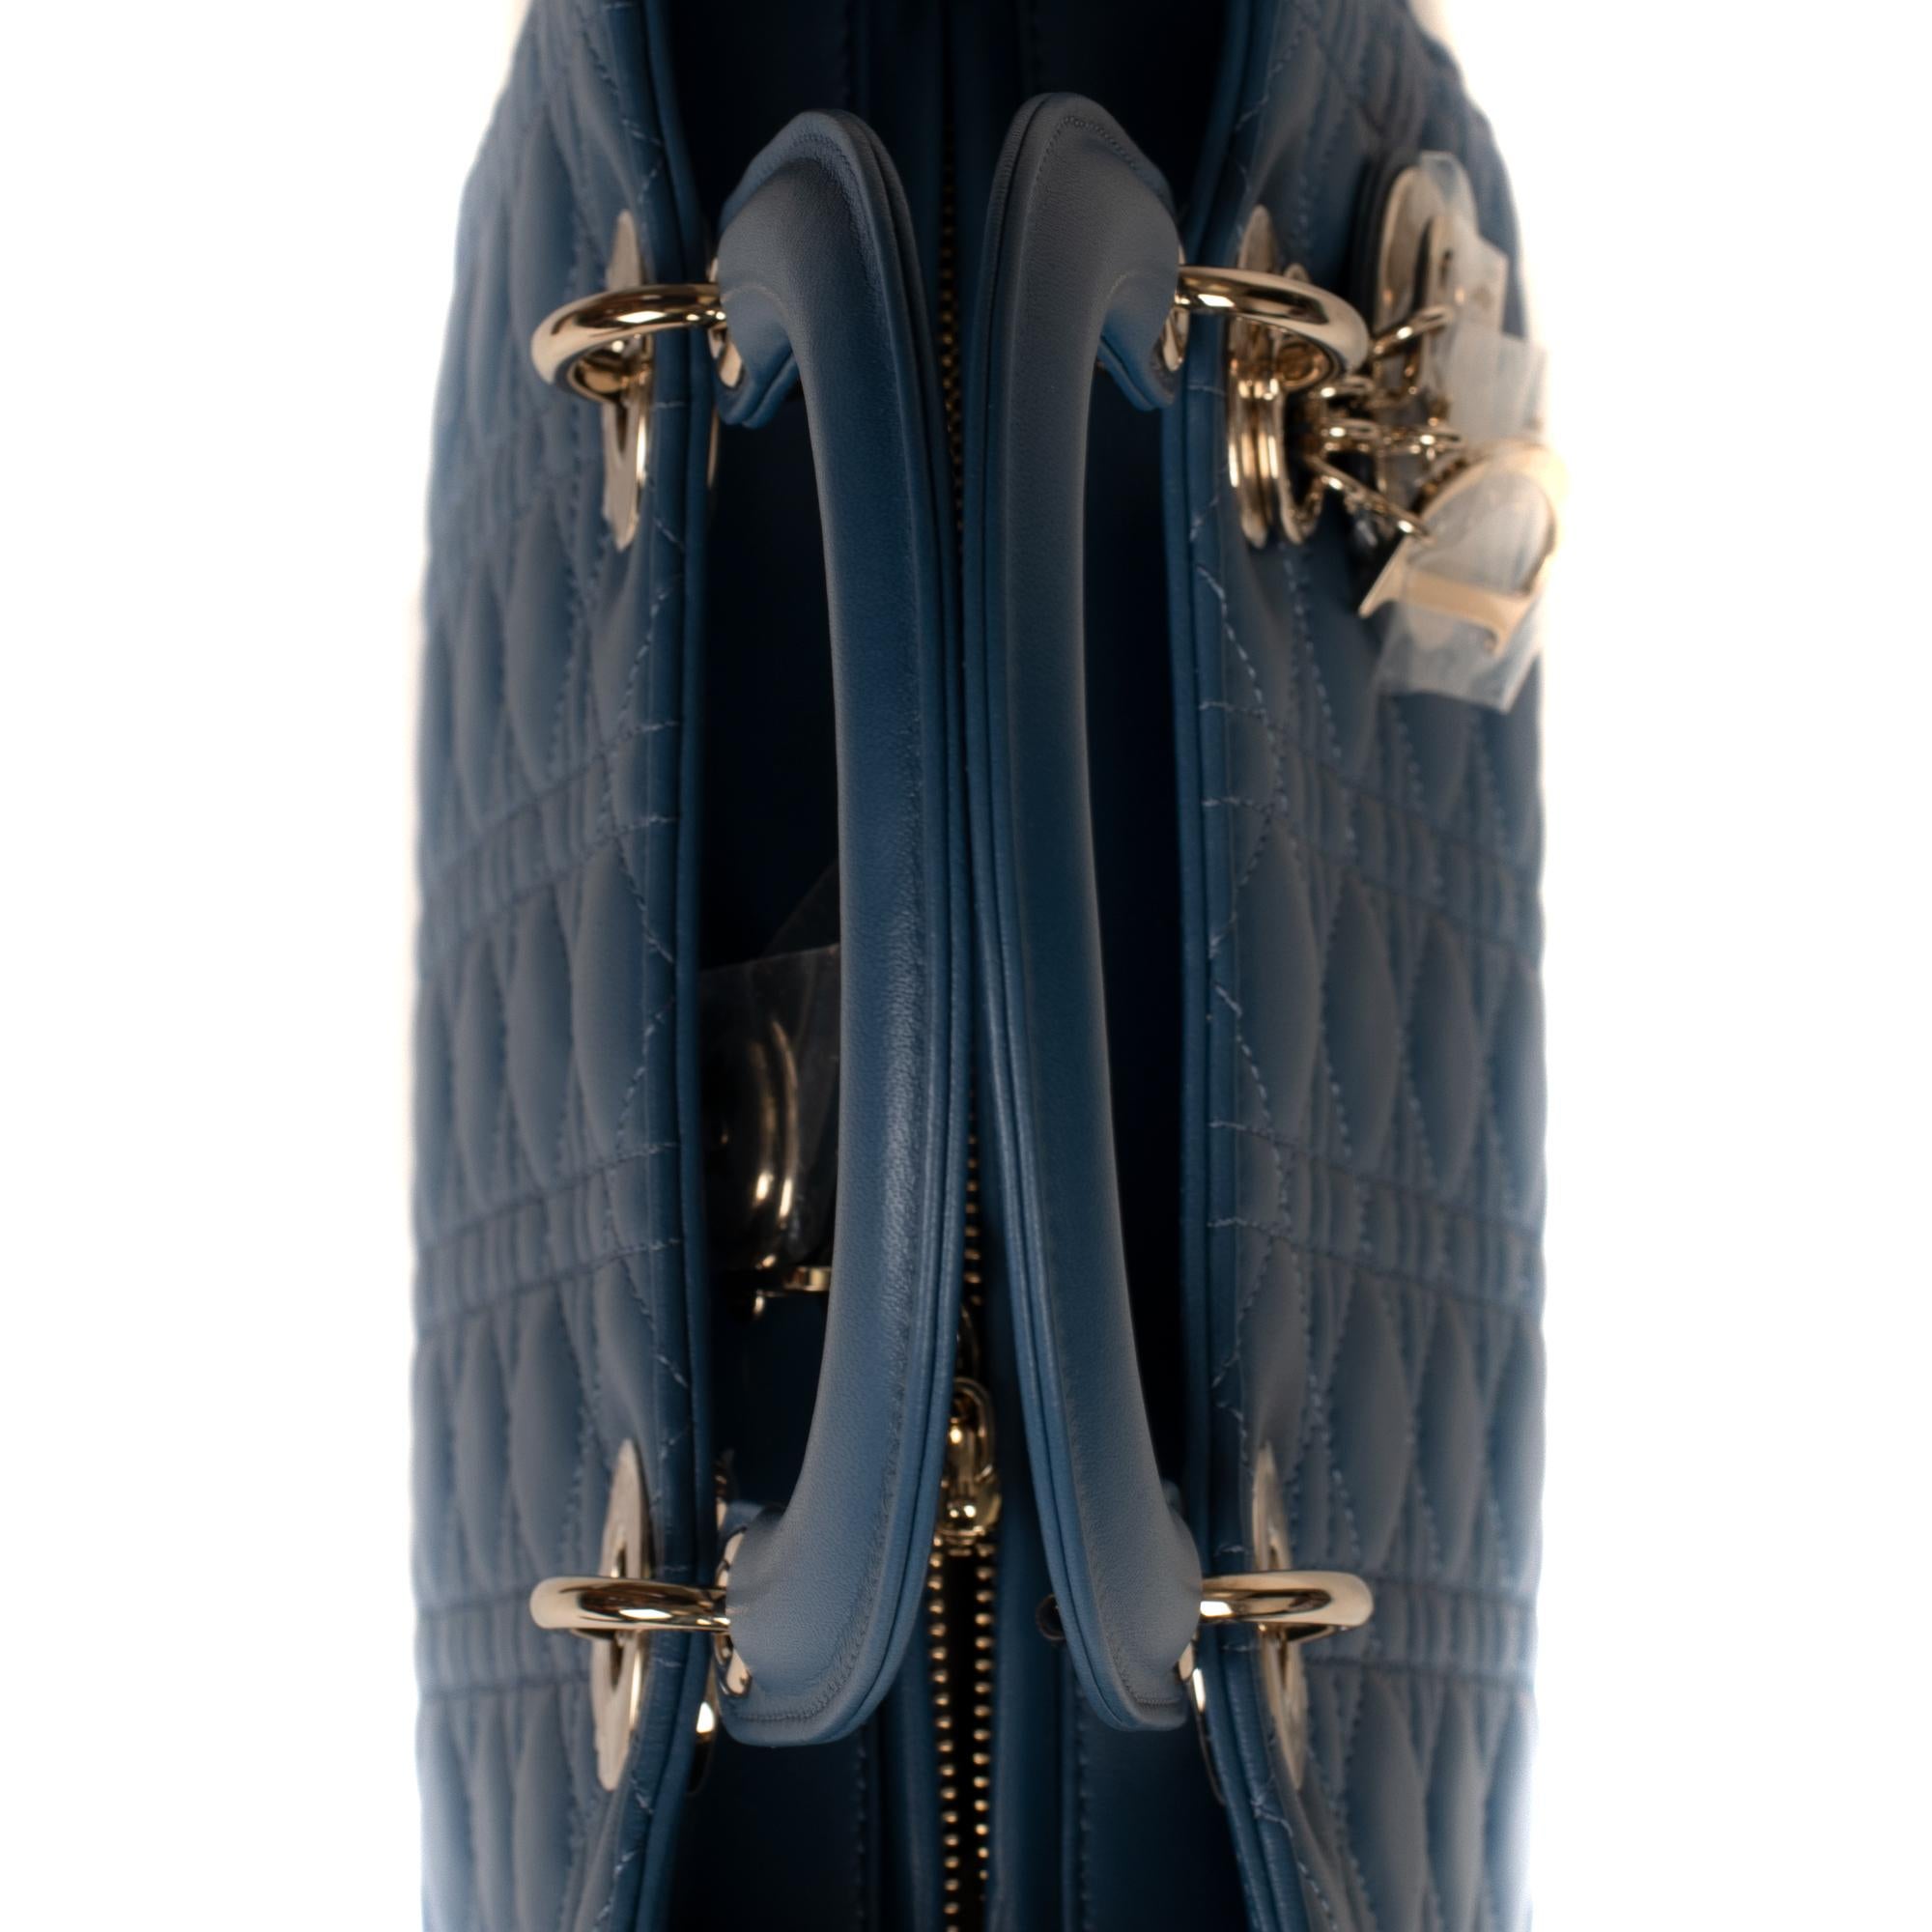  Christian Dior Lady Dior MM (Medium size) handbag in blue cannage leather, PHW 3